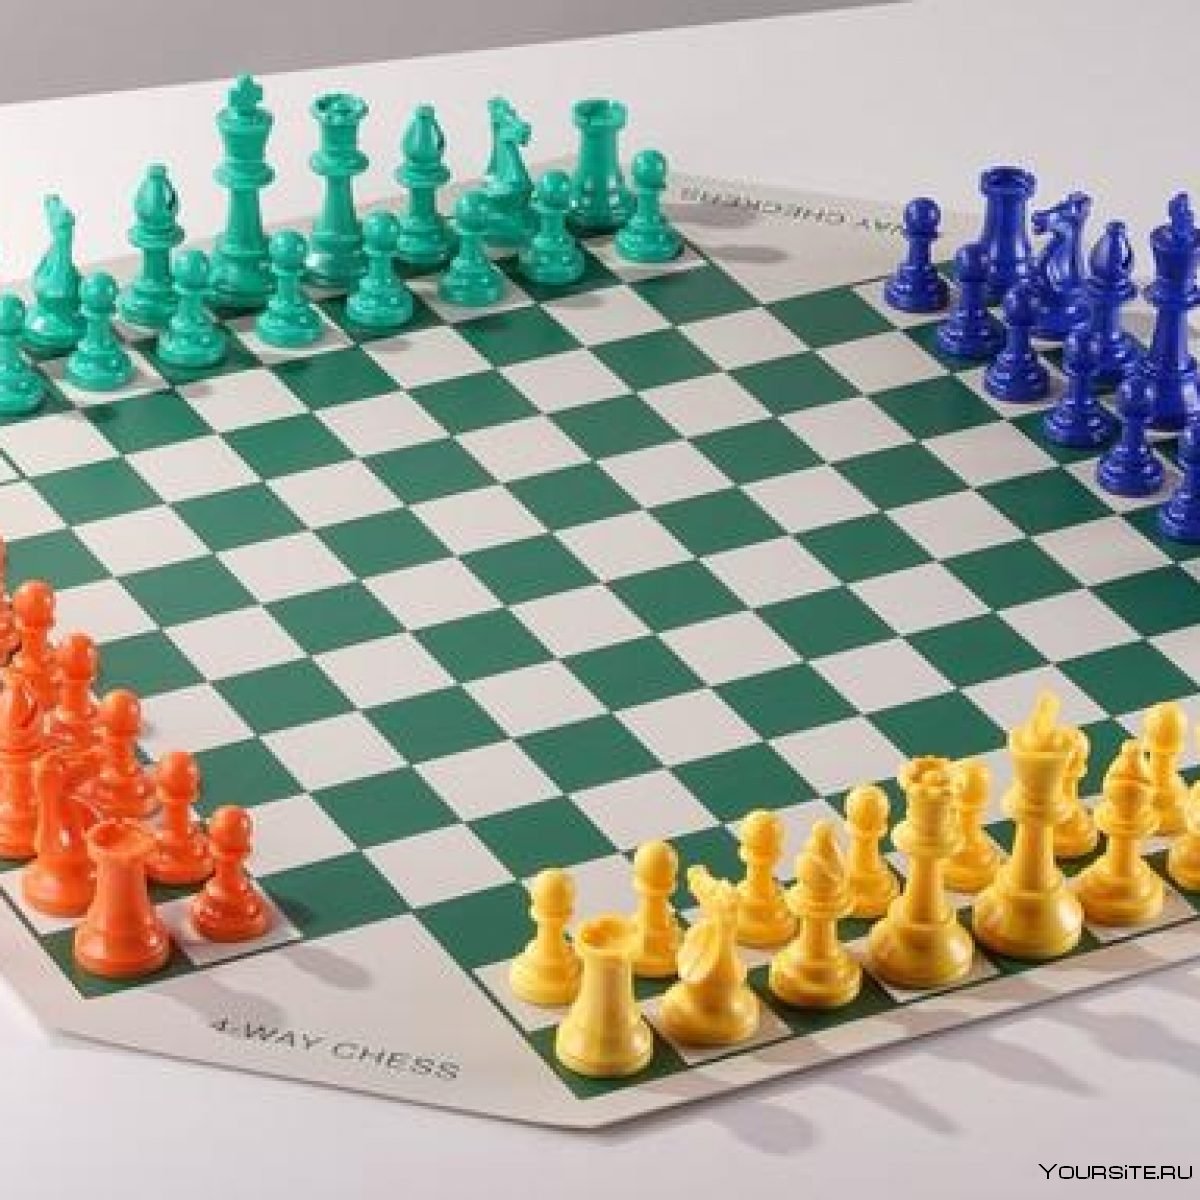 Девятерные шахматы